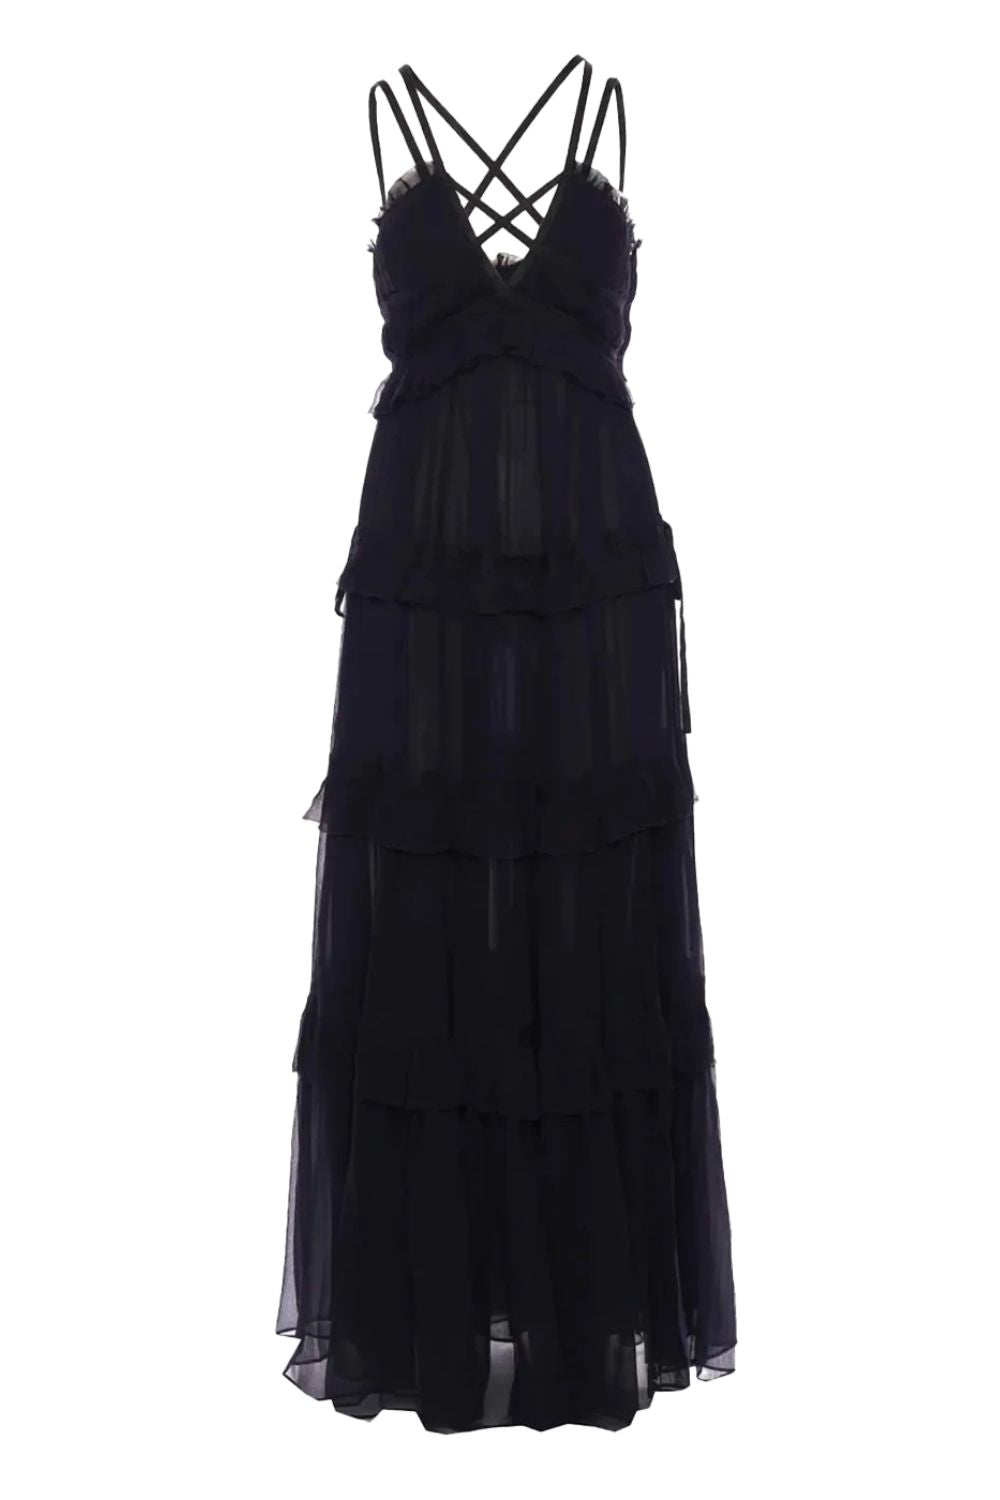 Luxe Lydia Black Silk & Eyelash Lace Maternity Dress - hautemama